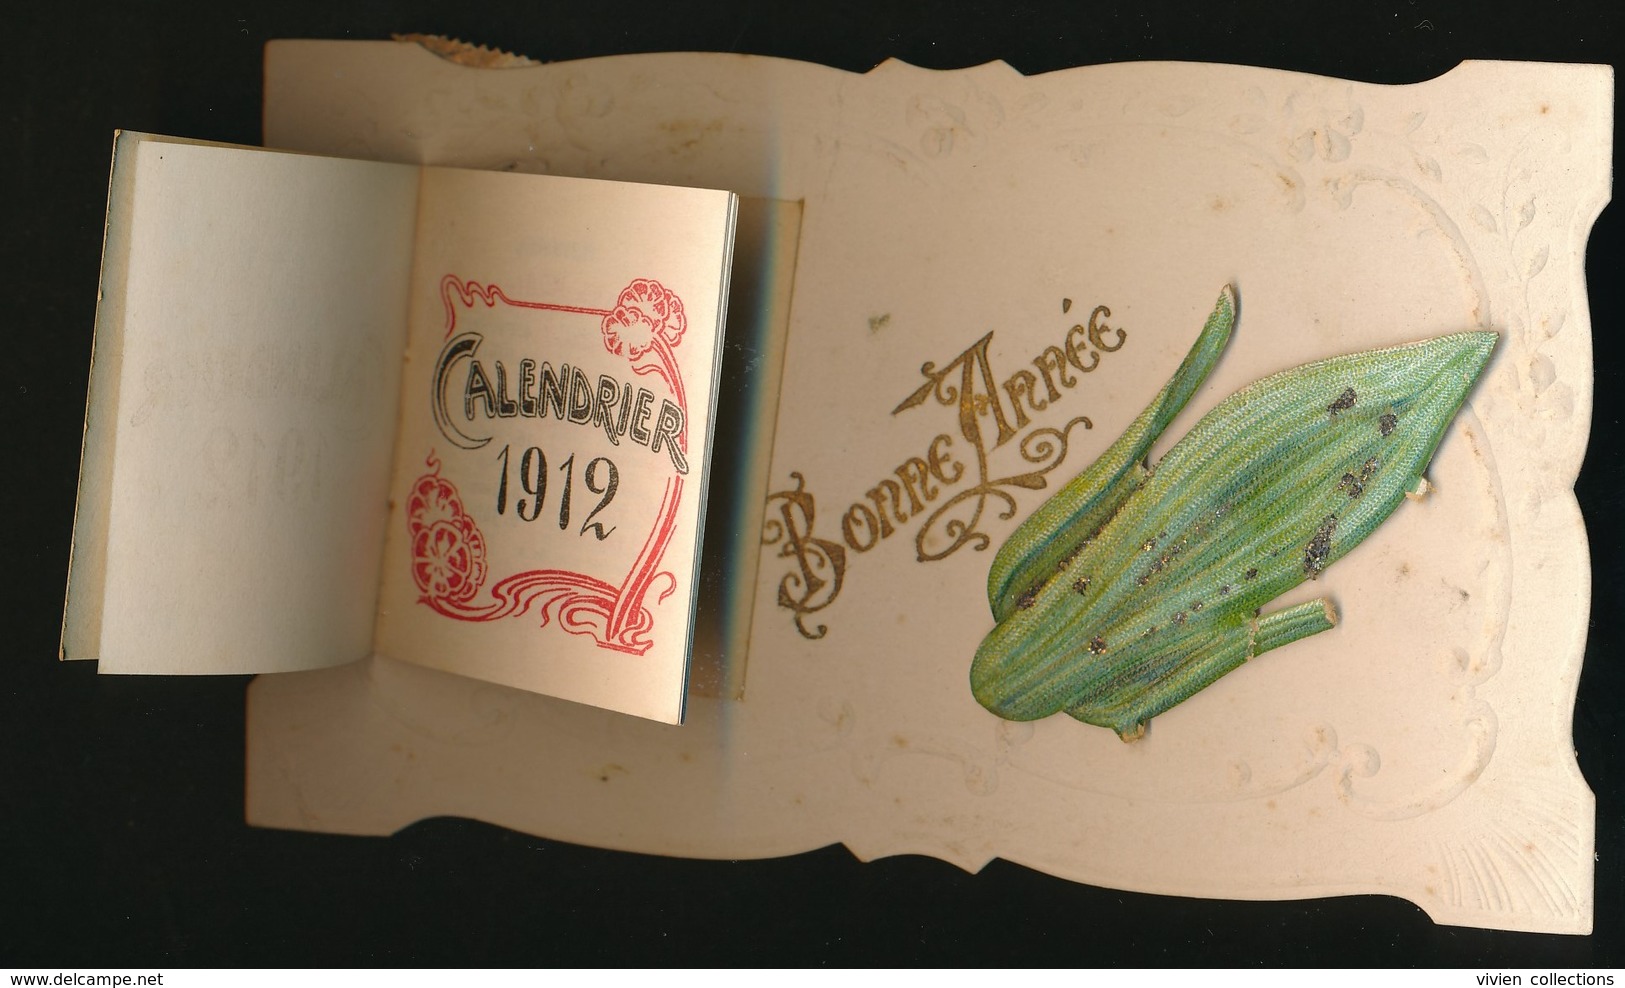 Carte De Bonne Année Avec Calendrier 1912 Gauffrée Et Illustration De Prospérité Par Un Découpi épi De Maïs - New Year